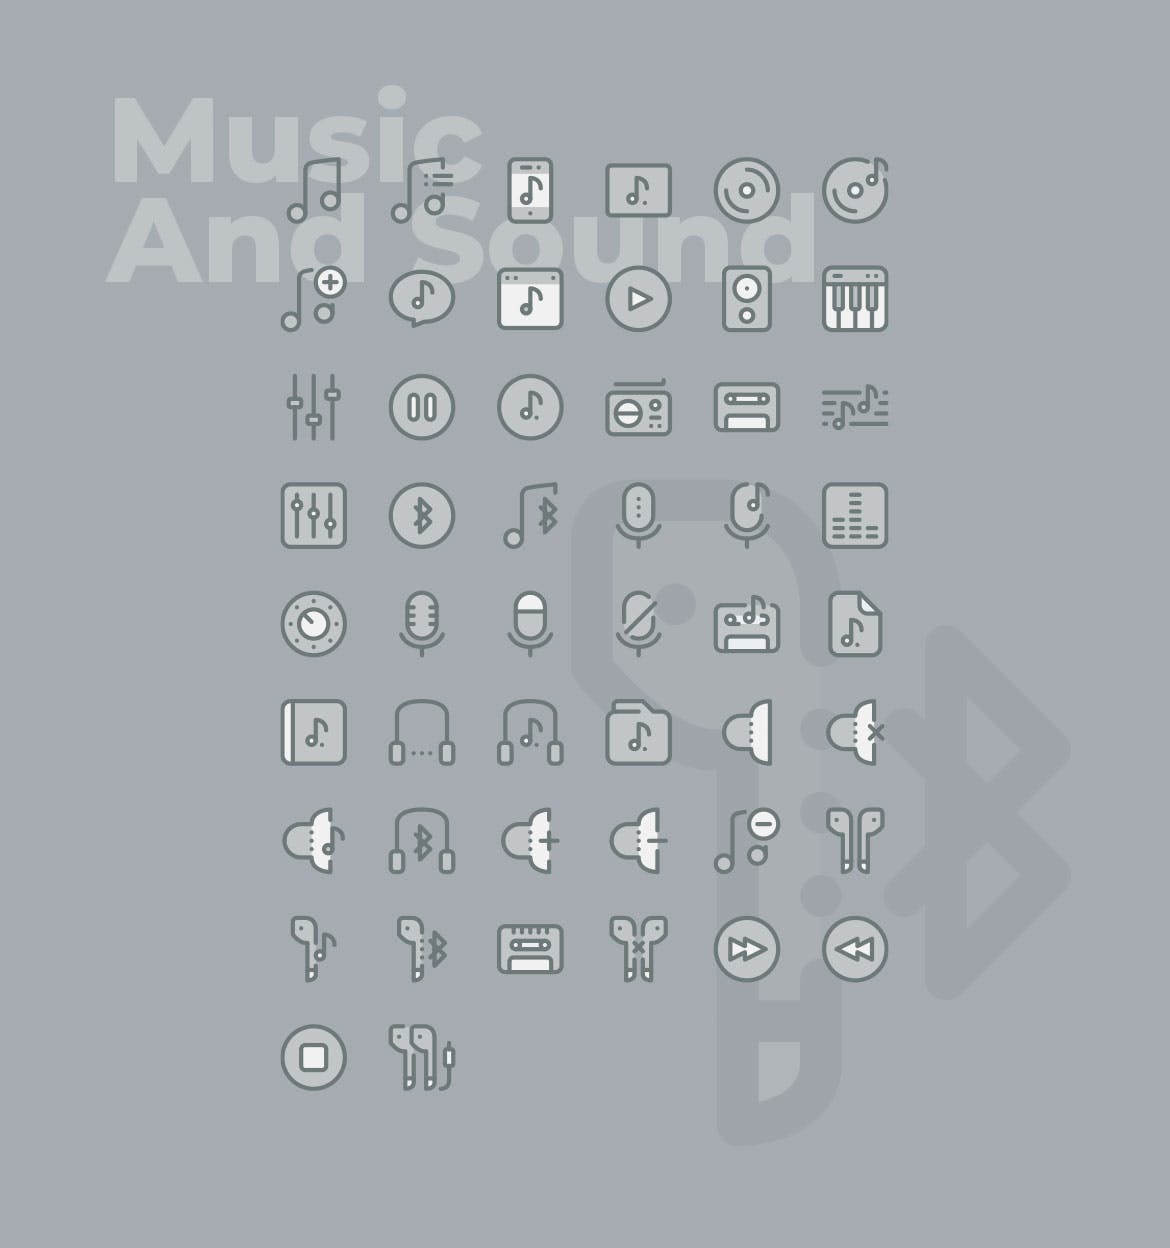 50枚音乐&声音主题矢量双色调第一素材精选图标 50 Music and Sound Icons  –  Two Tone Style插图(1)